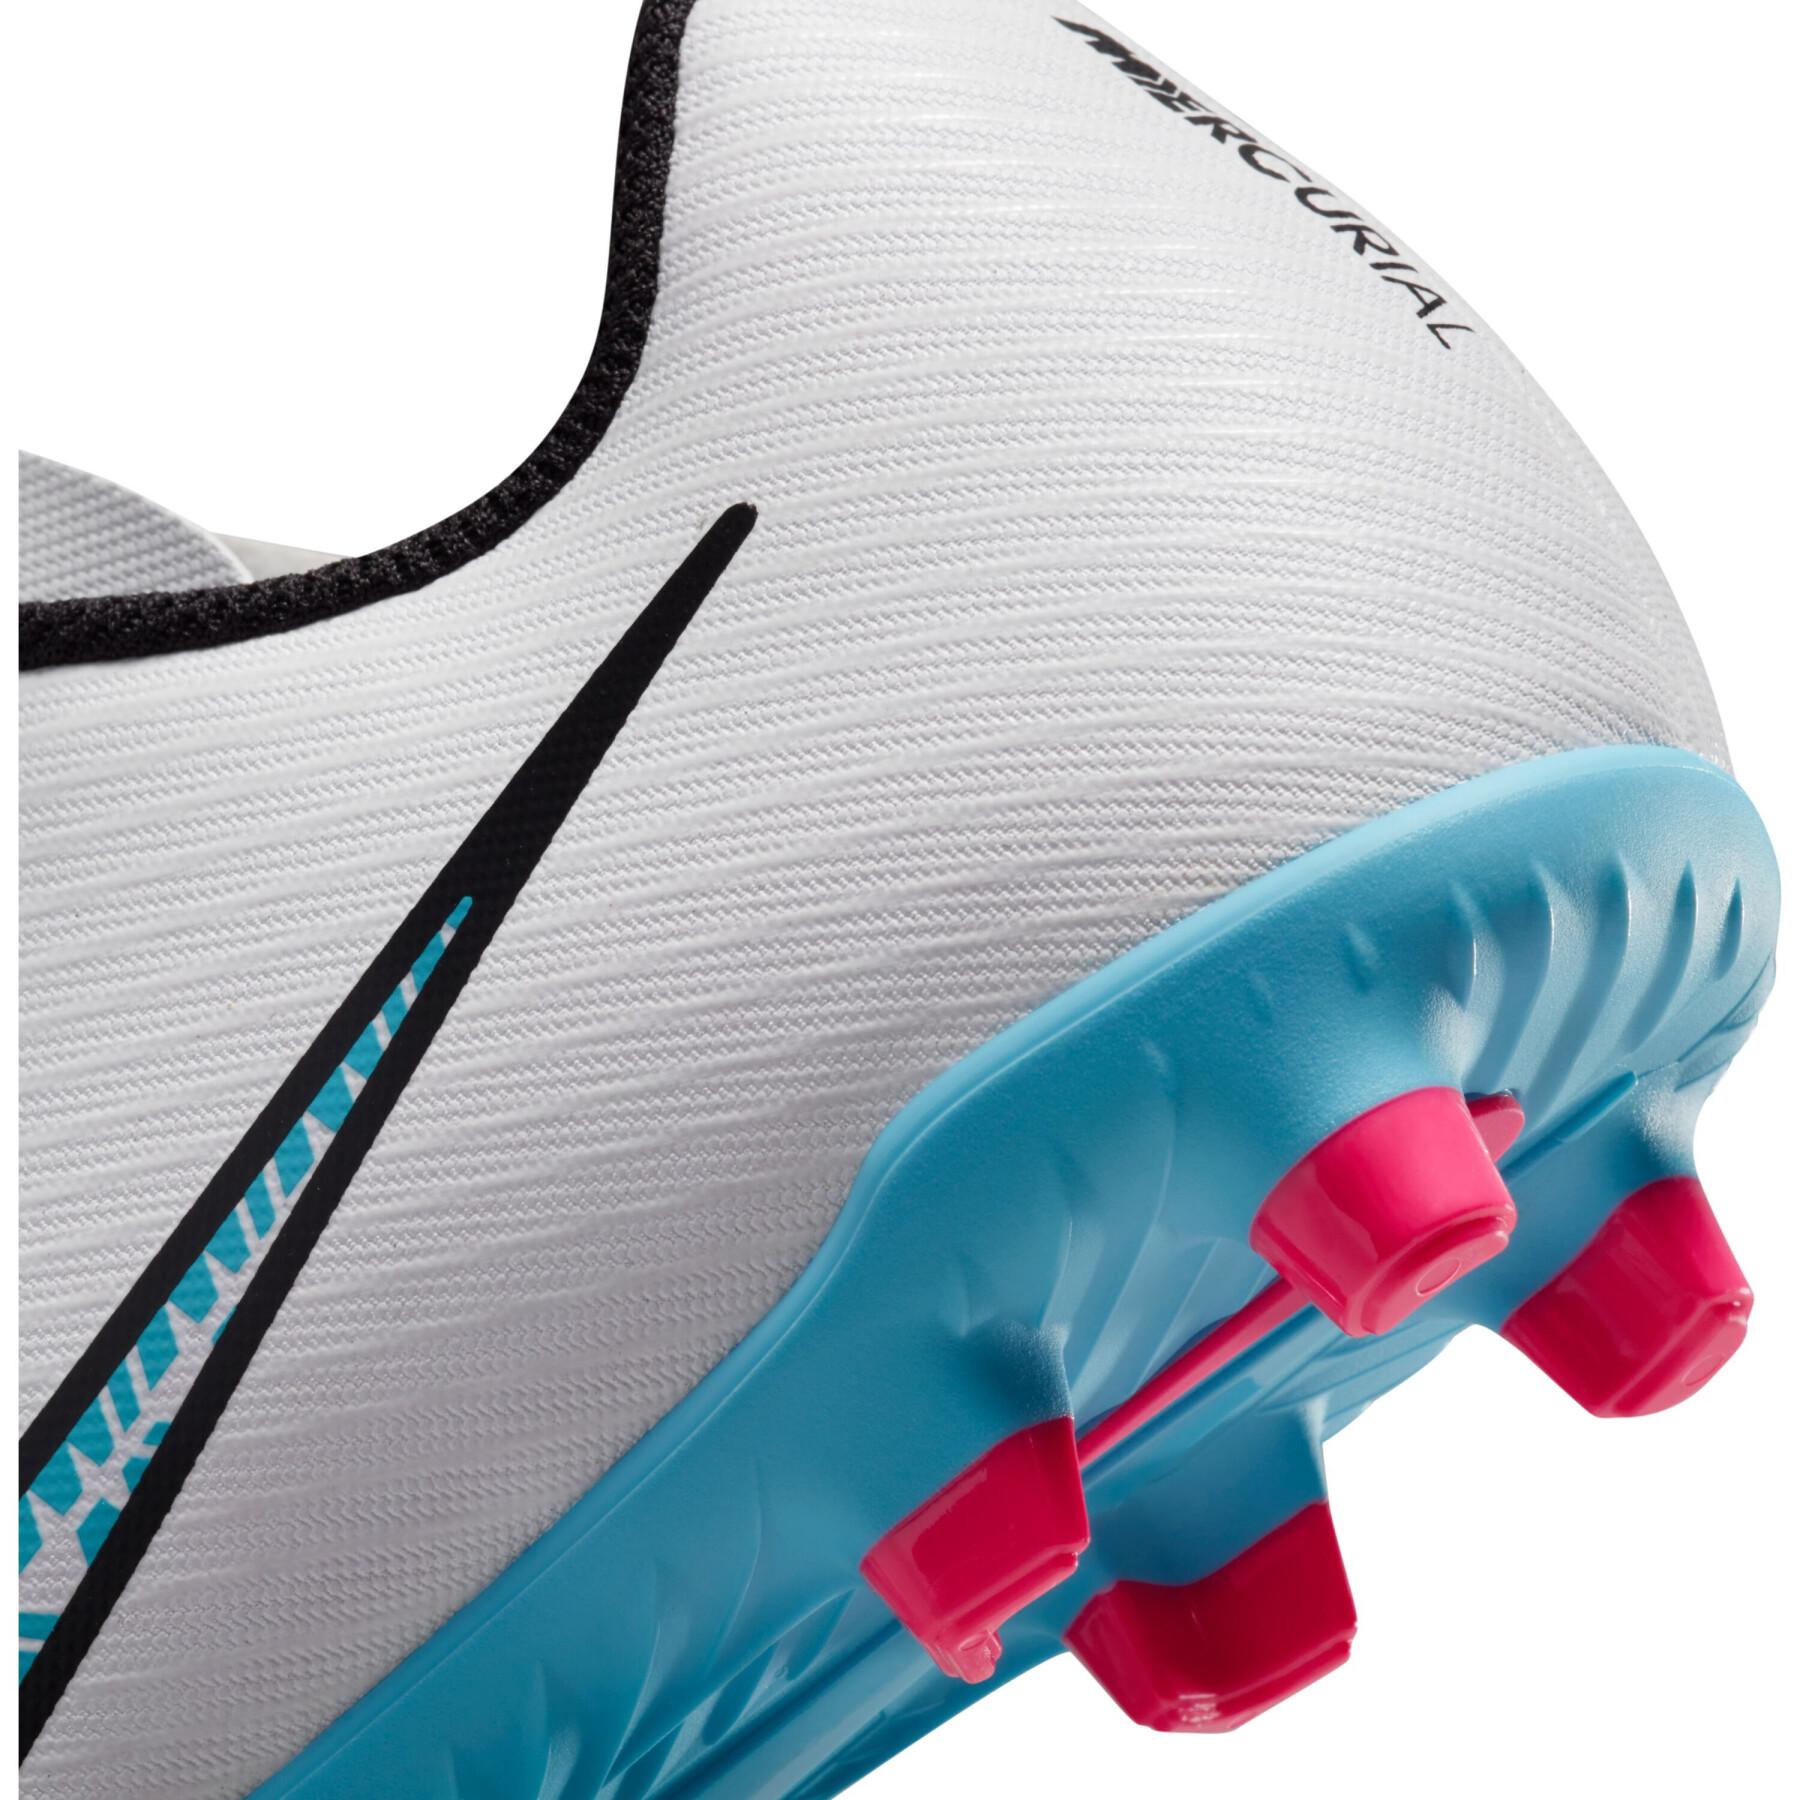 Chaussures de football enfant Nike Mercurial Vapor 15 Club FG/MG - Blast Pack